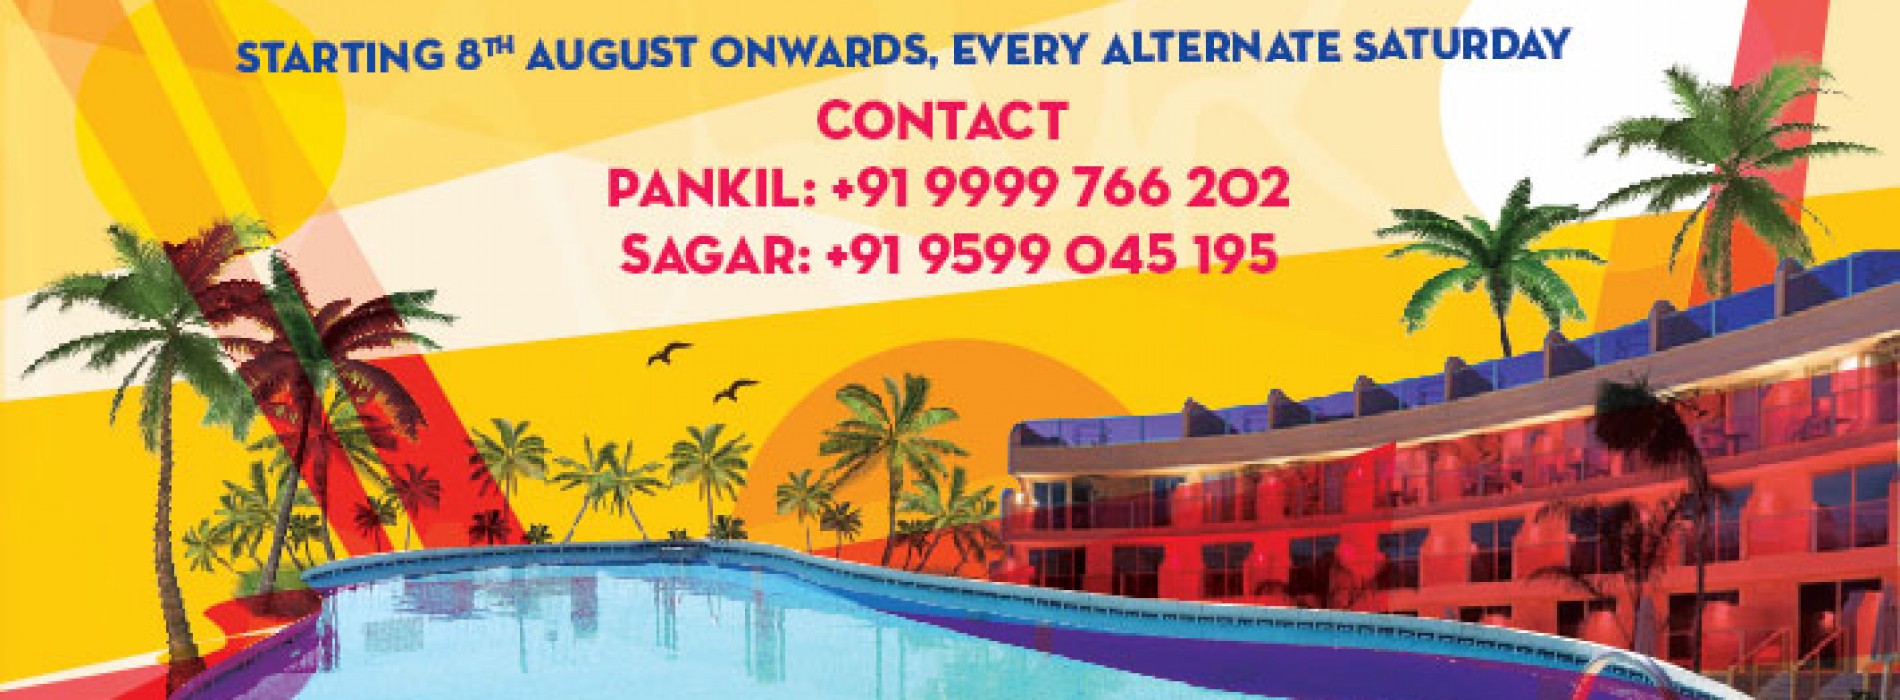 Weekend Getaway & pool party events in delhi